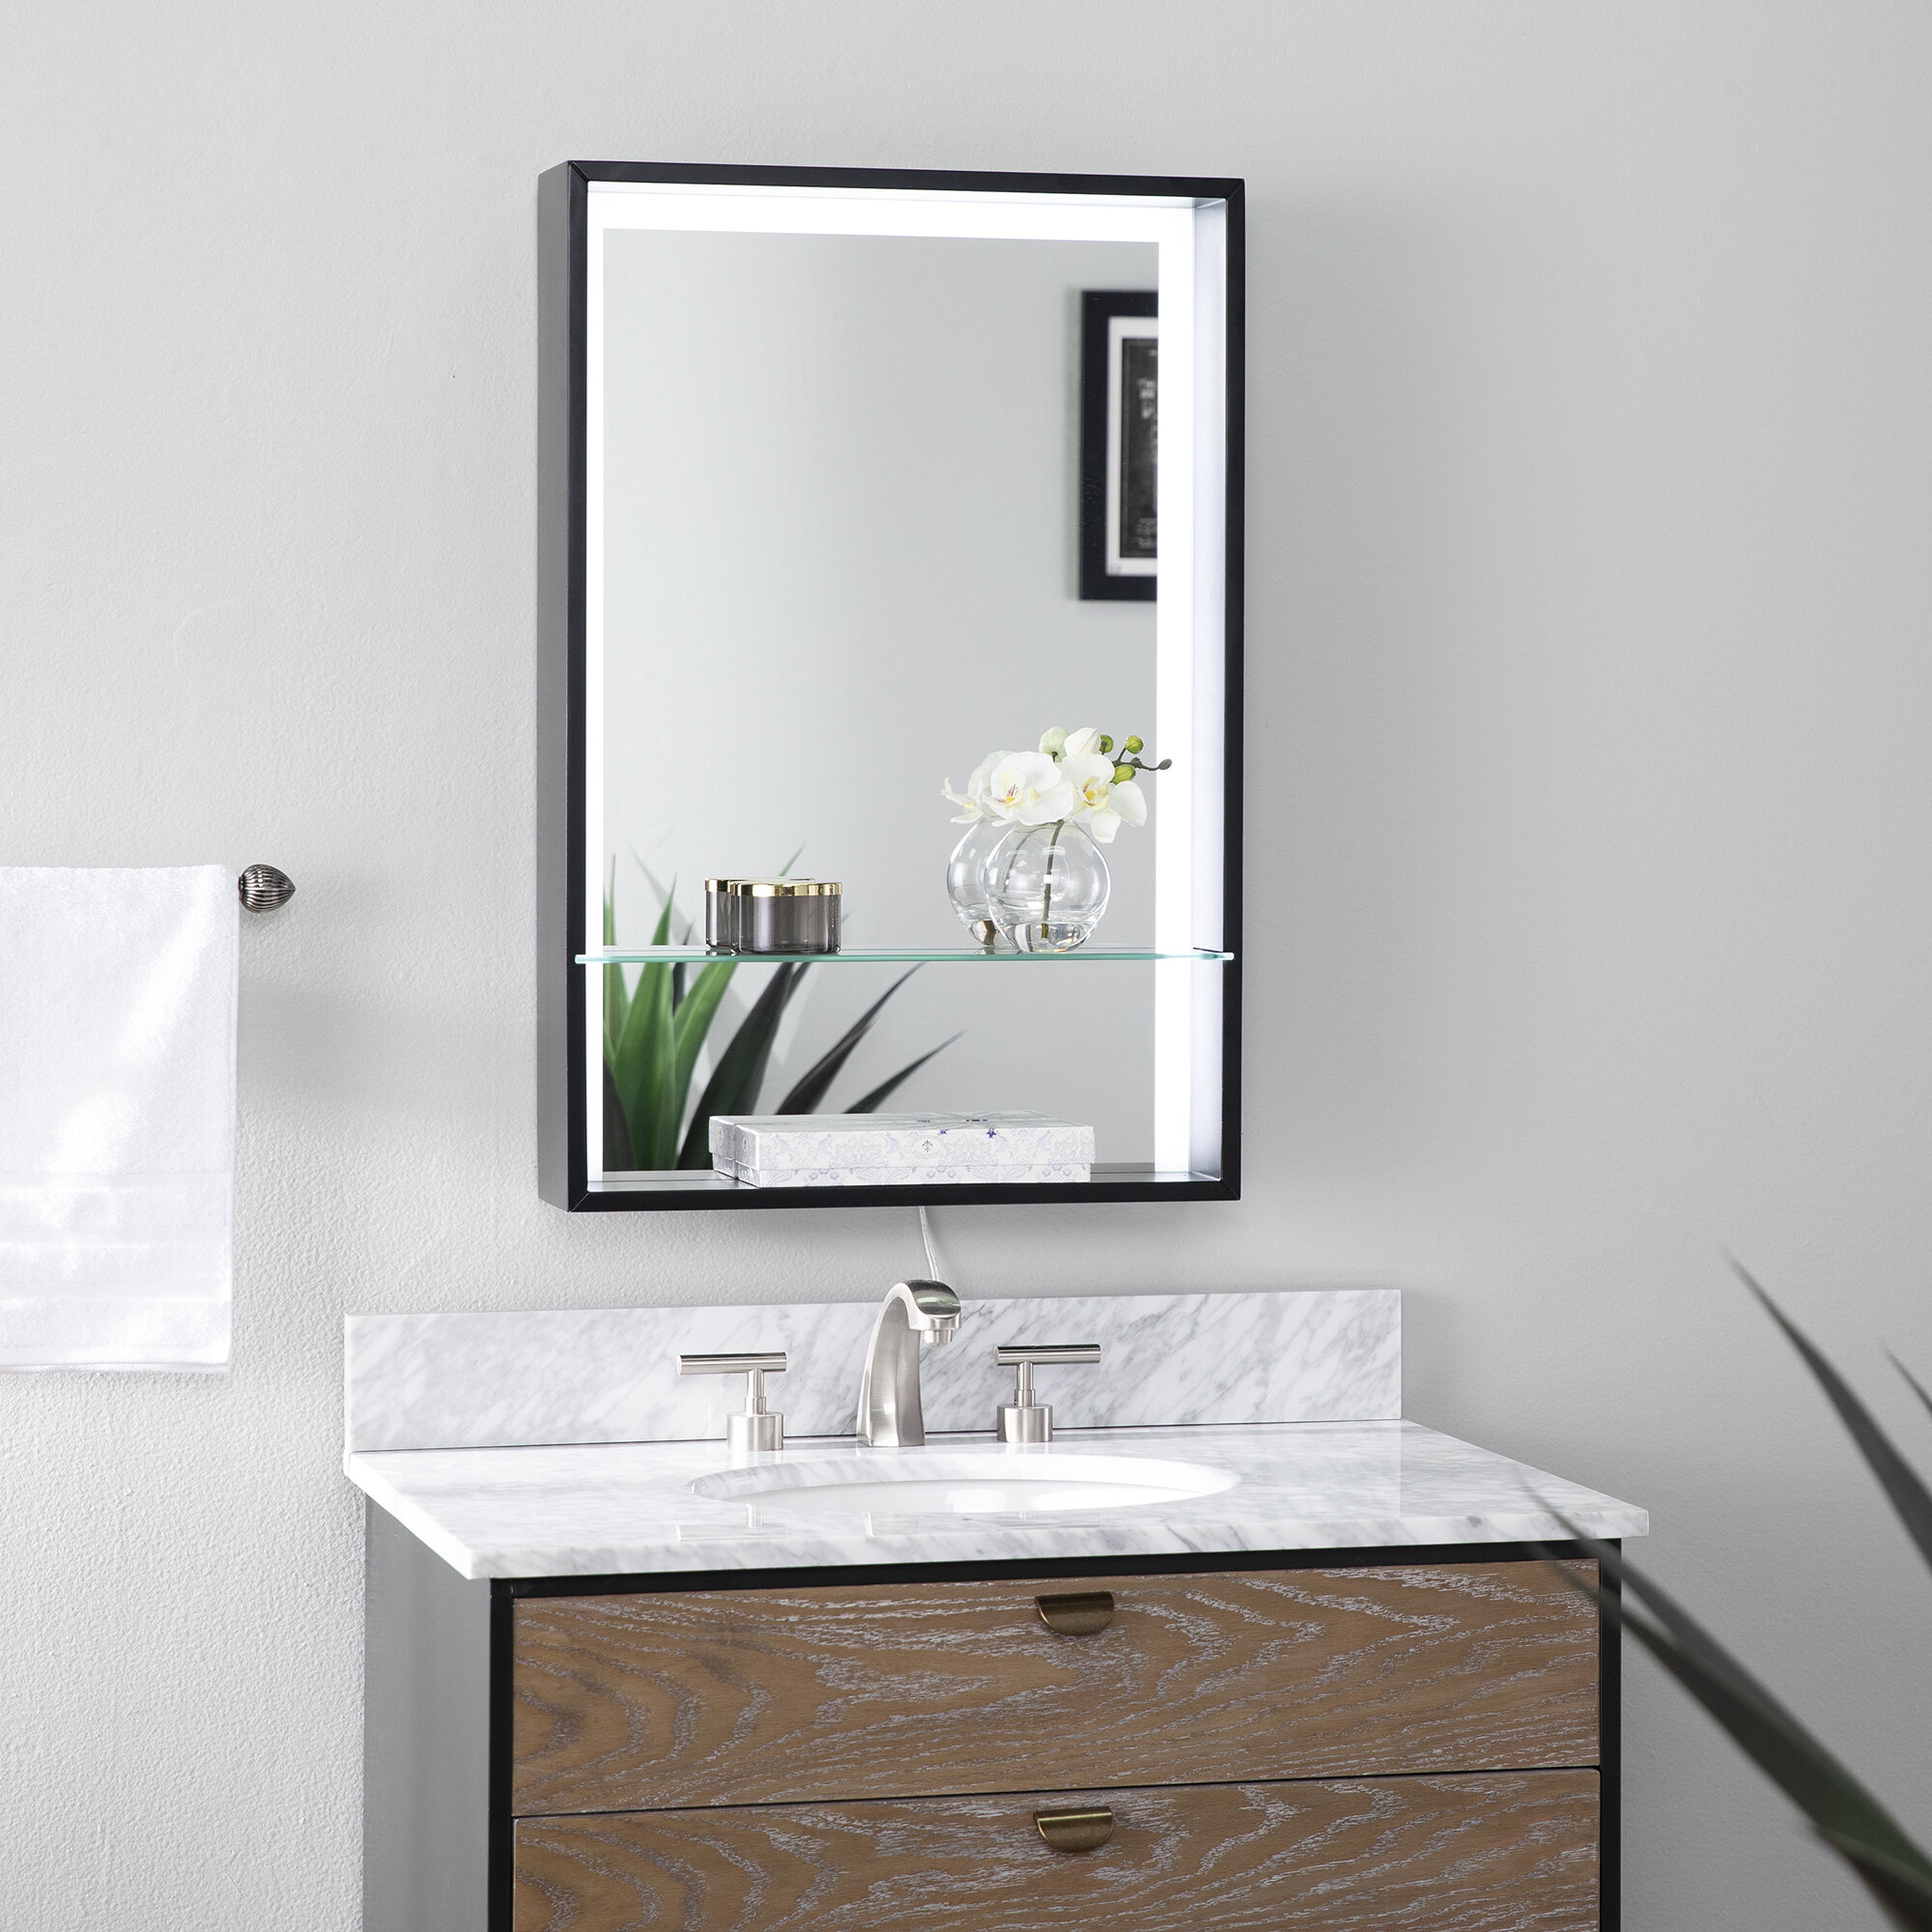 https://assets.wfcdn.com/im/48074852/compr-r85/1212/121295813/wervin-beveled-lighted-with-shelves-bathroom-mirror.jpg